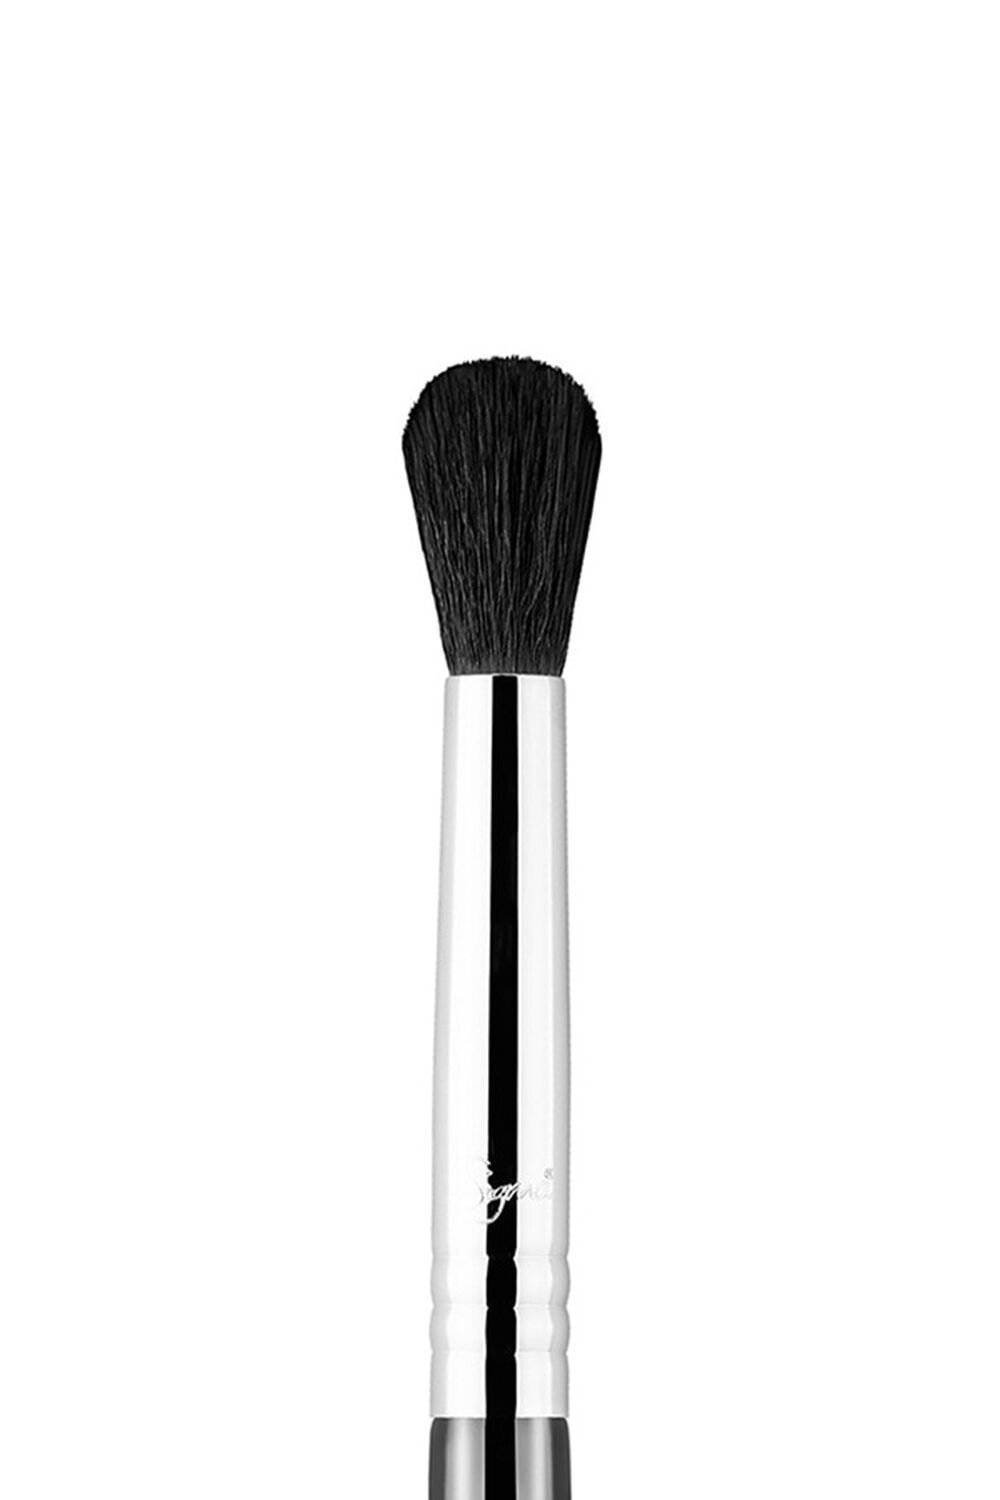 Sigma Beauty E38 Diffused Crease Brush, image 2